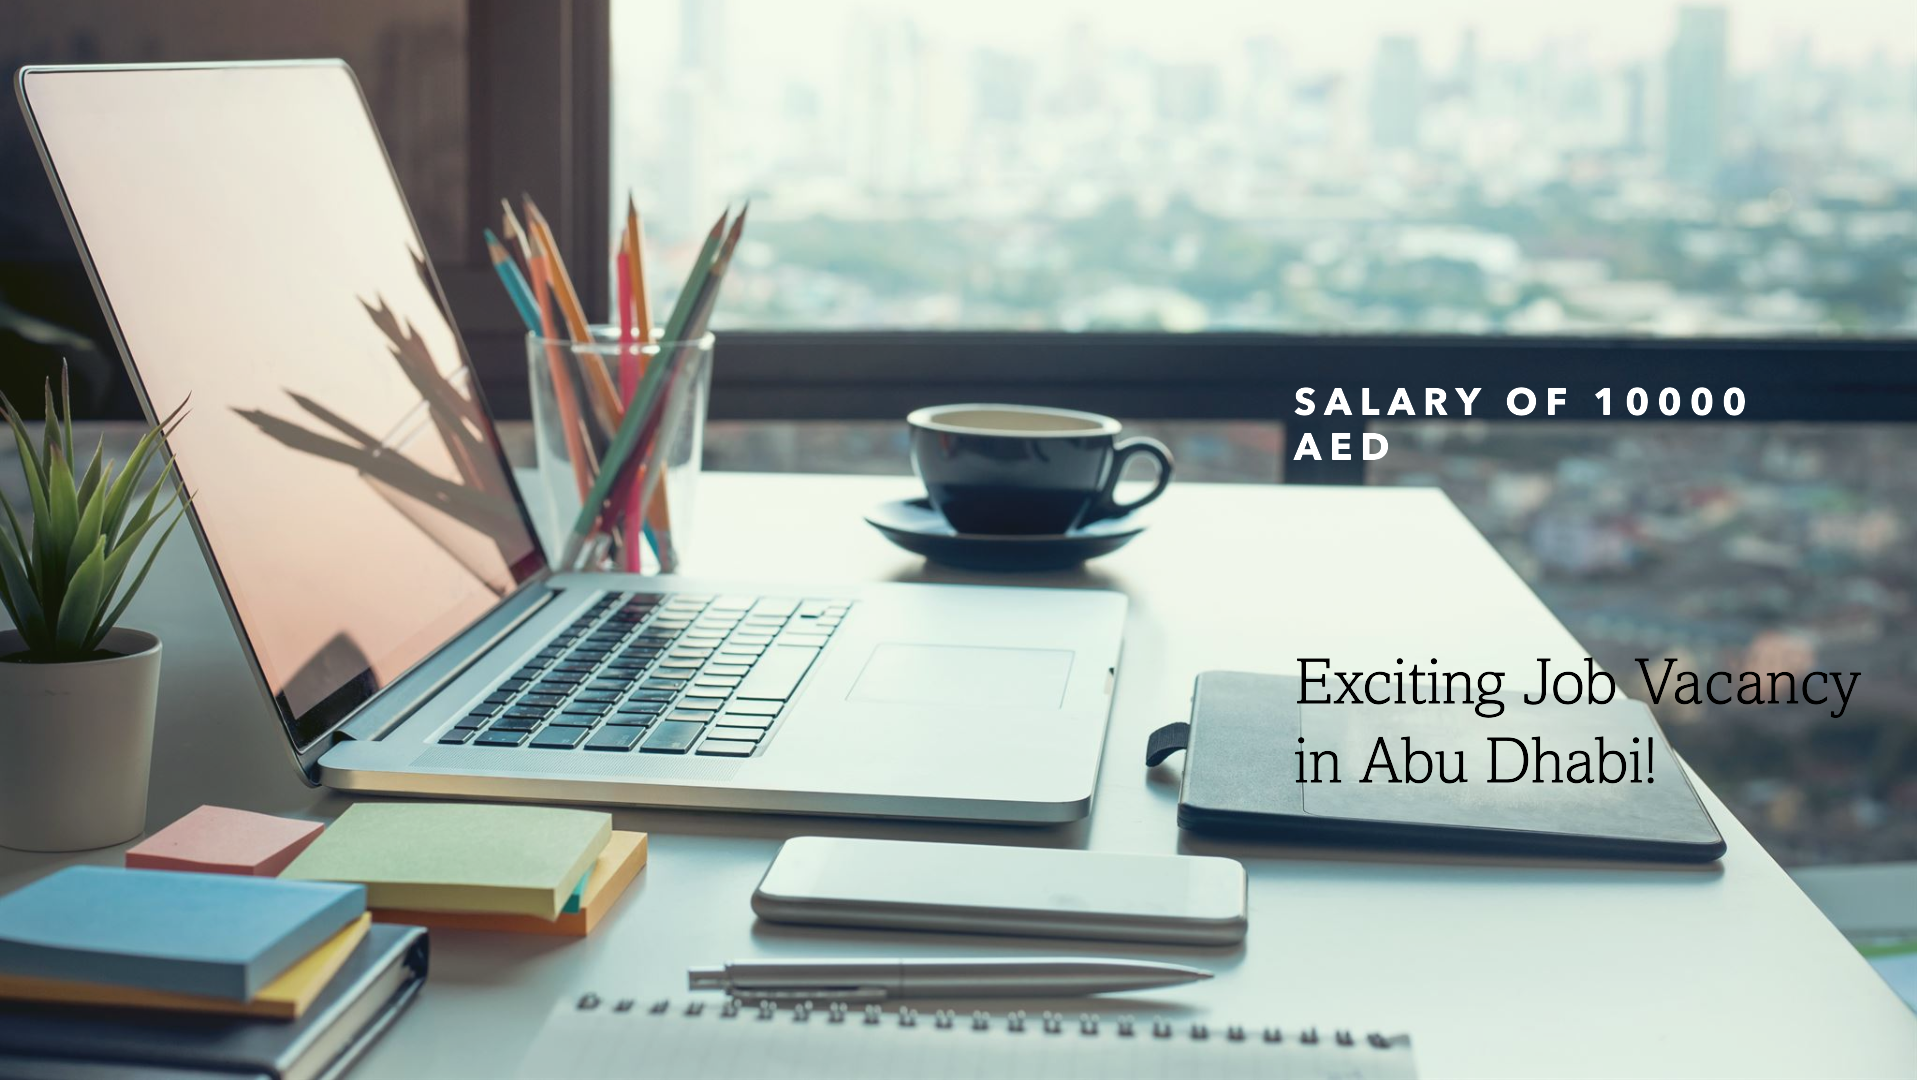 abu dhabi job vacancy with salary 10000 AED